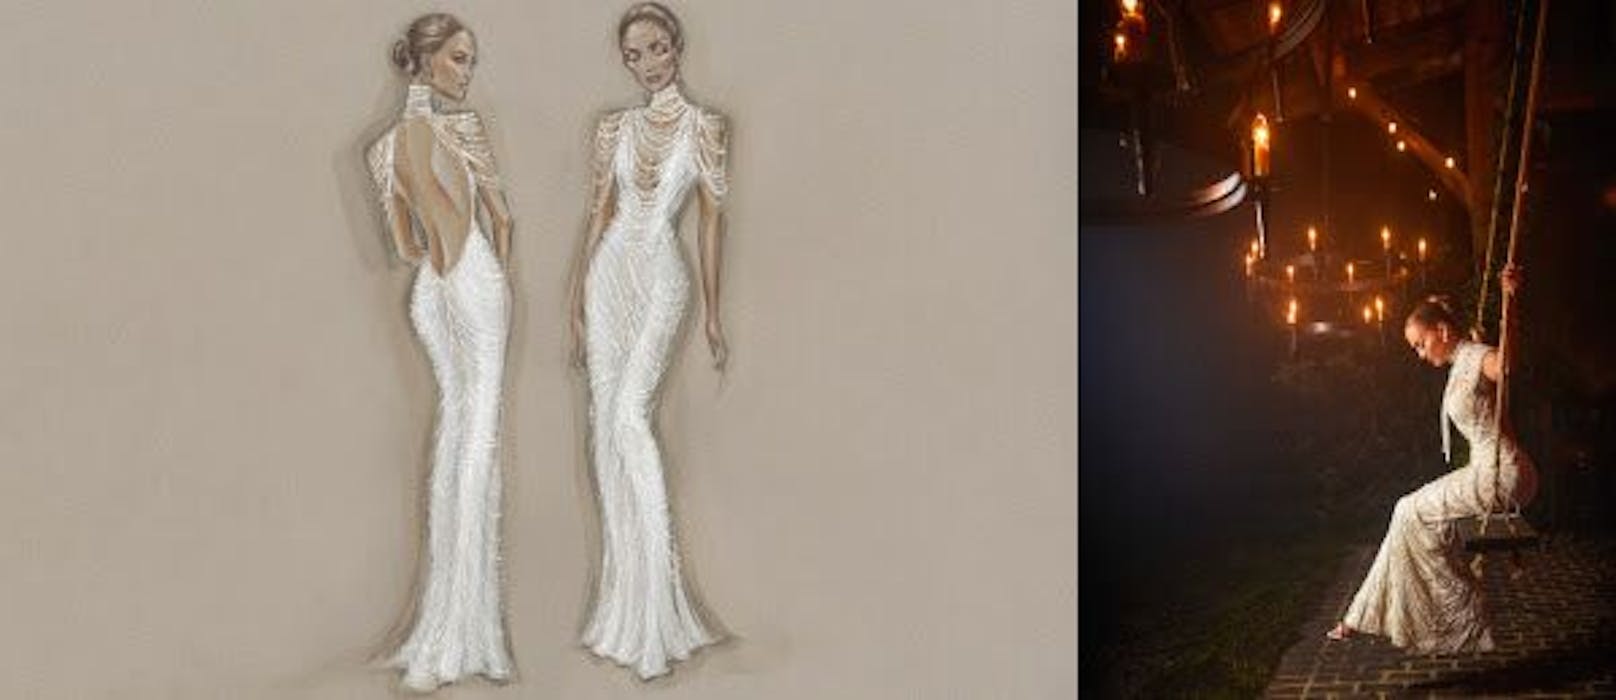 Zum Empfang trug die Diva ein perlenverziertes Kleid. 30 Näherinnen arbeiteten 700 Stunden an der Robe von Ralph Lauren.